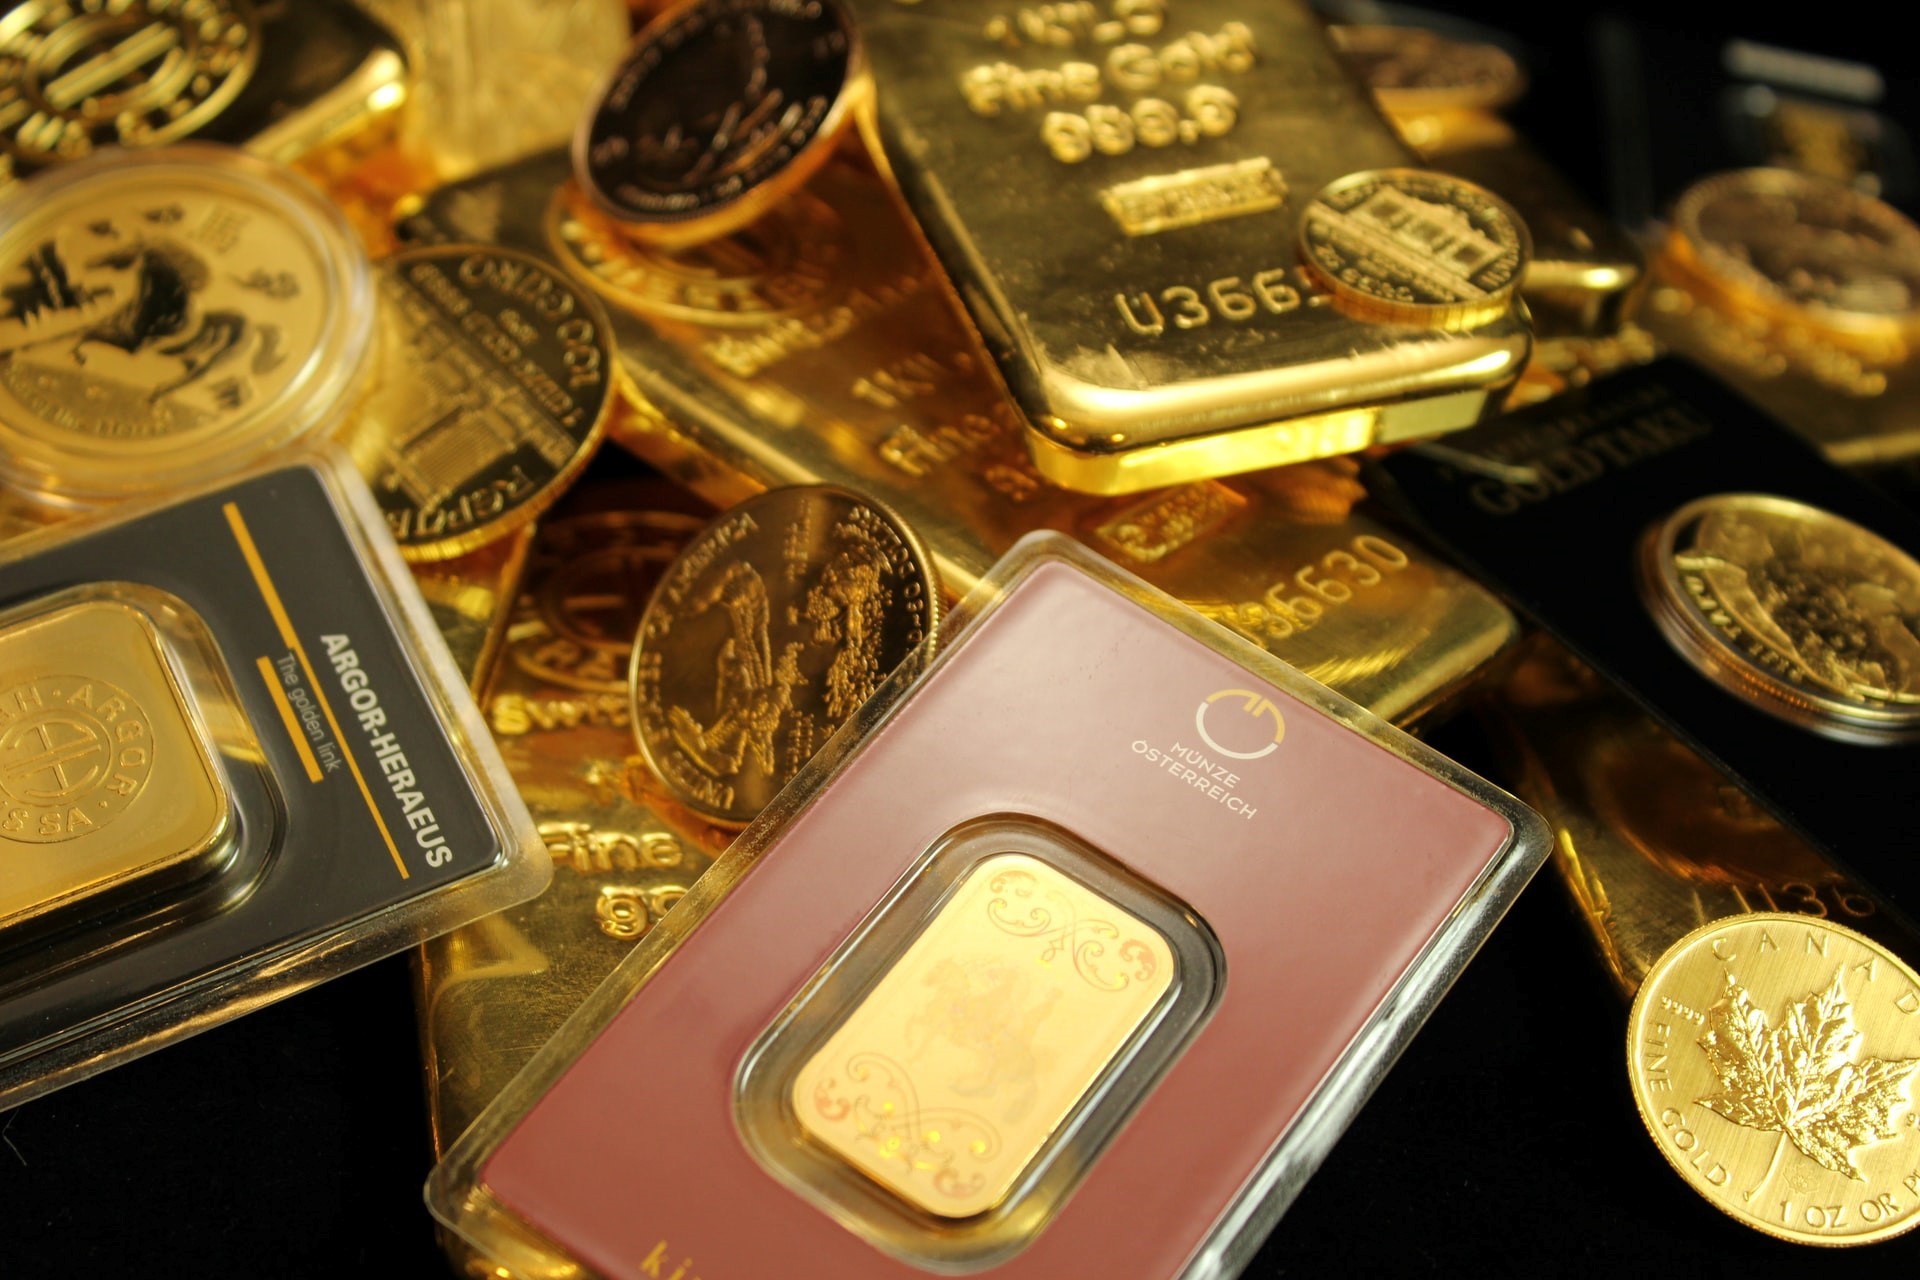 Den europeiska guld-ETF/ETC-marknaden, ofta kallad europeiska guldfonder, har just nått 100 miljarder USD i AUM.